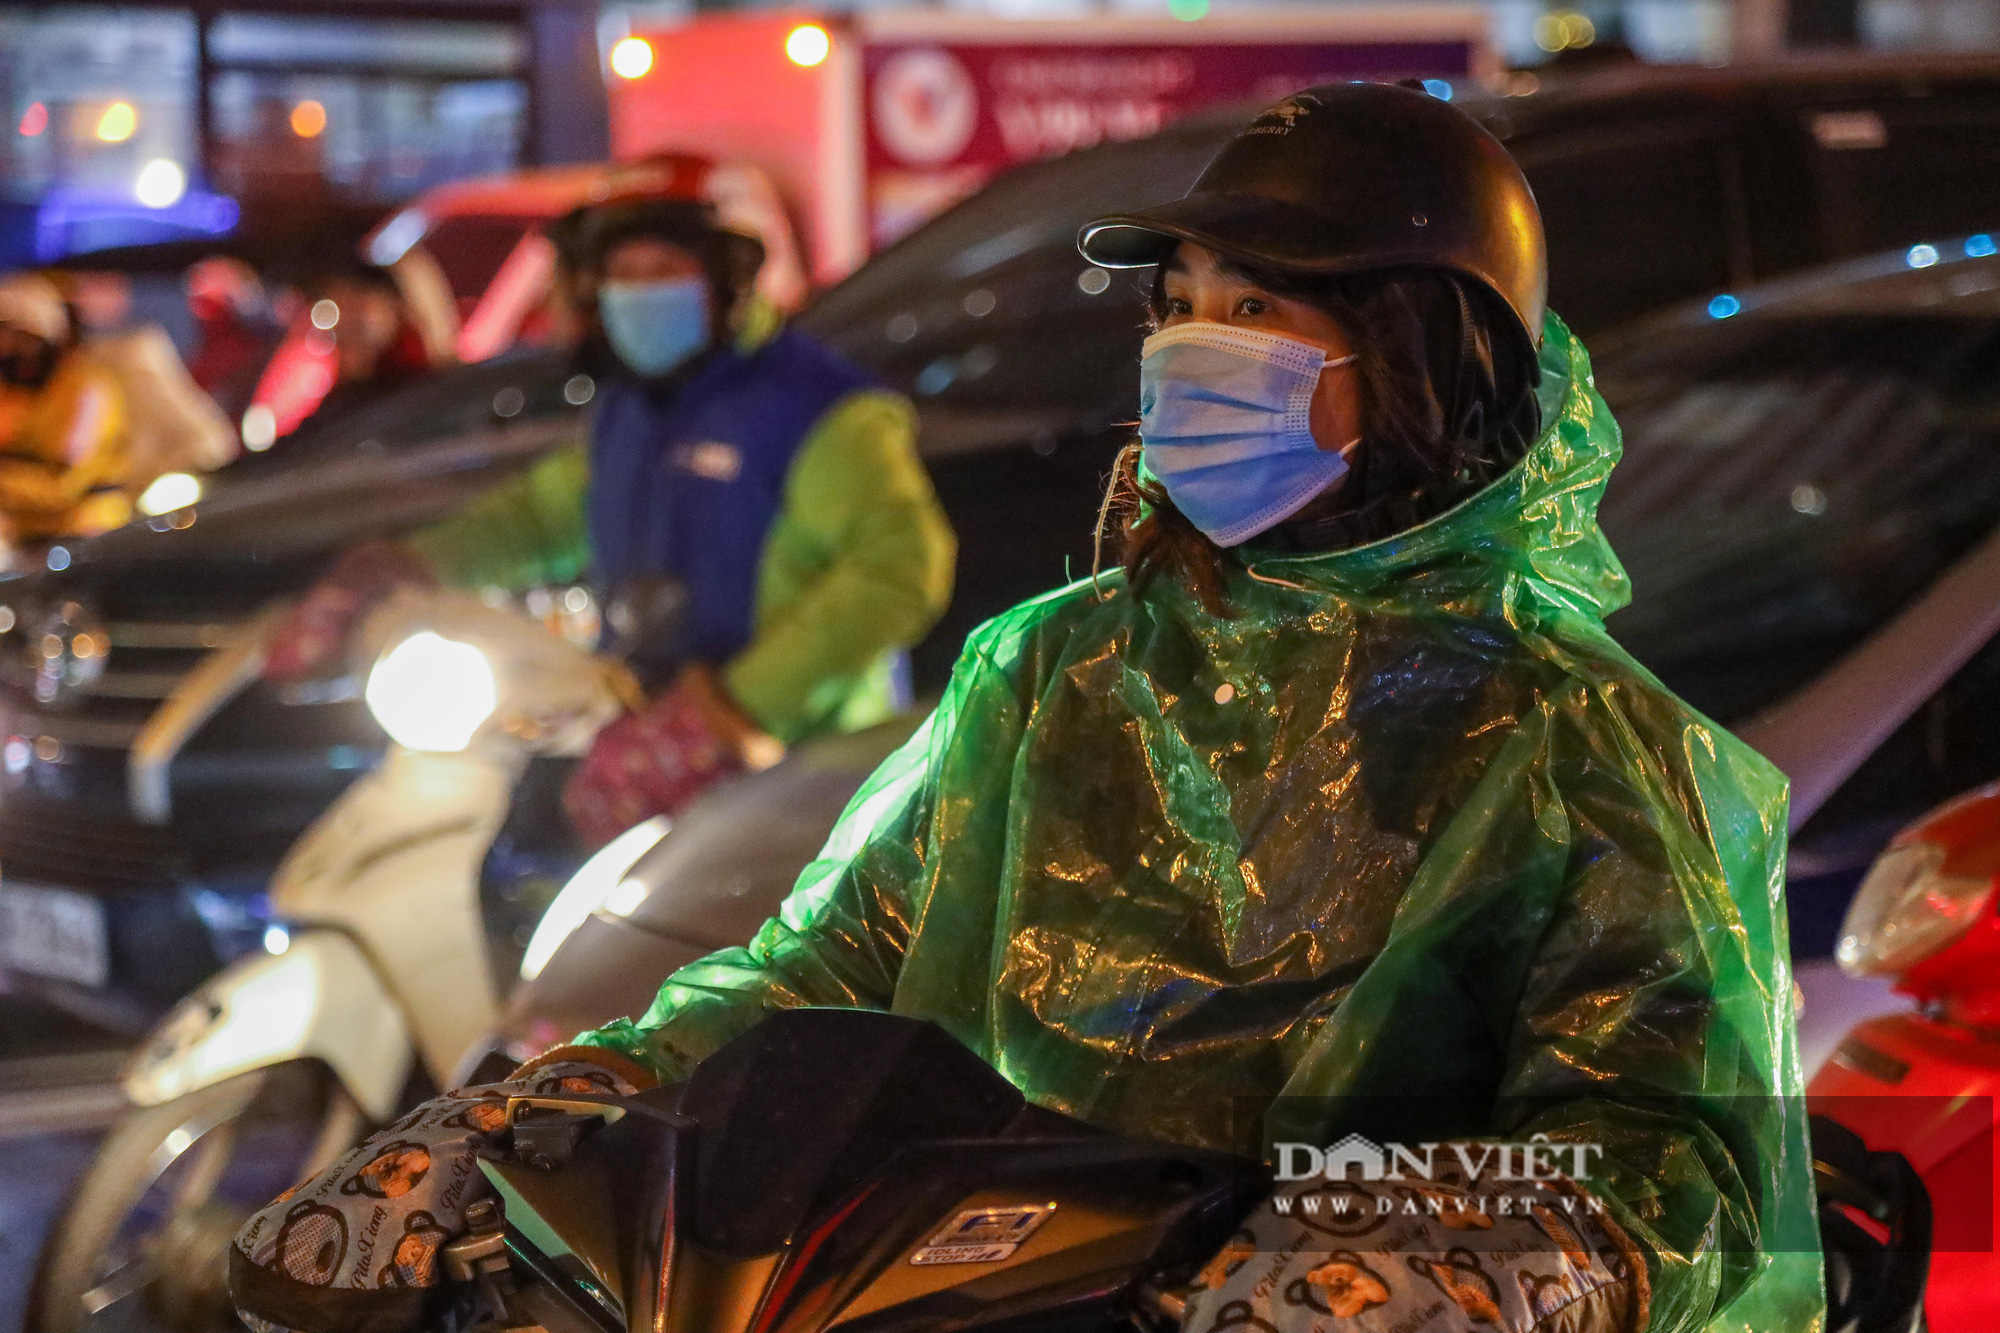 Trời không mưa, người Hà Nội vẫn mặc áo mưa ra đường ngày lạnh buốt 10 độ C - Ảnh 11.